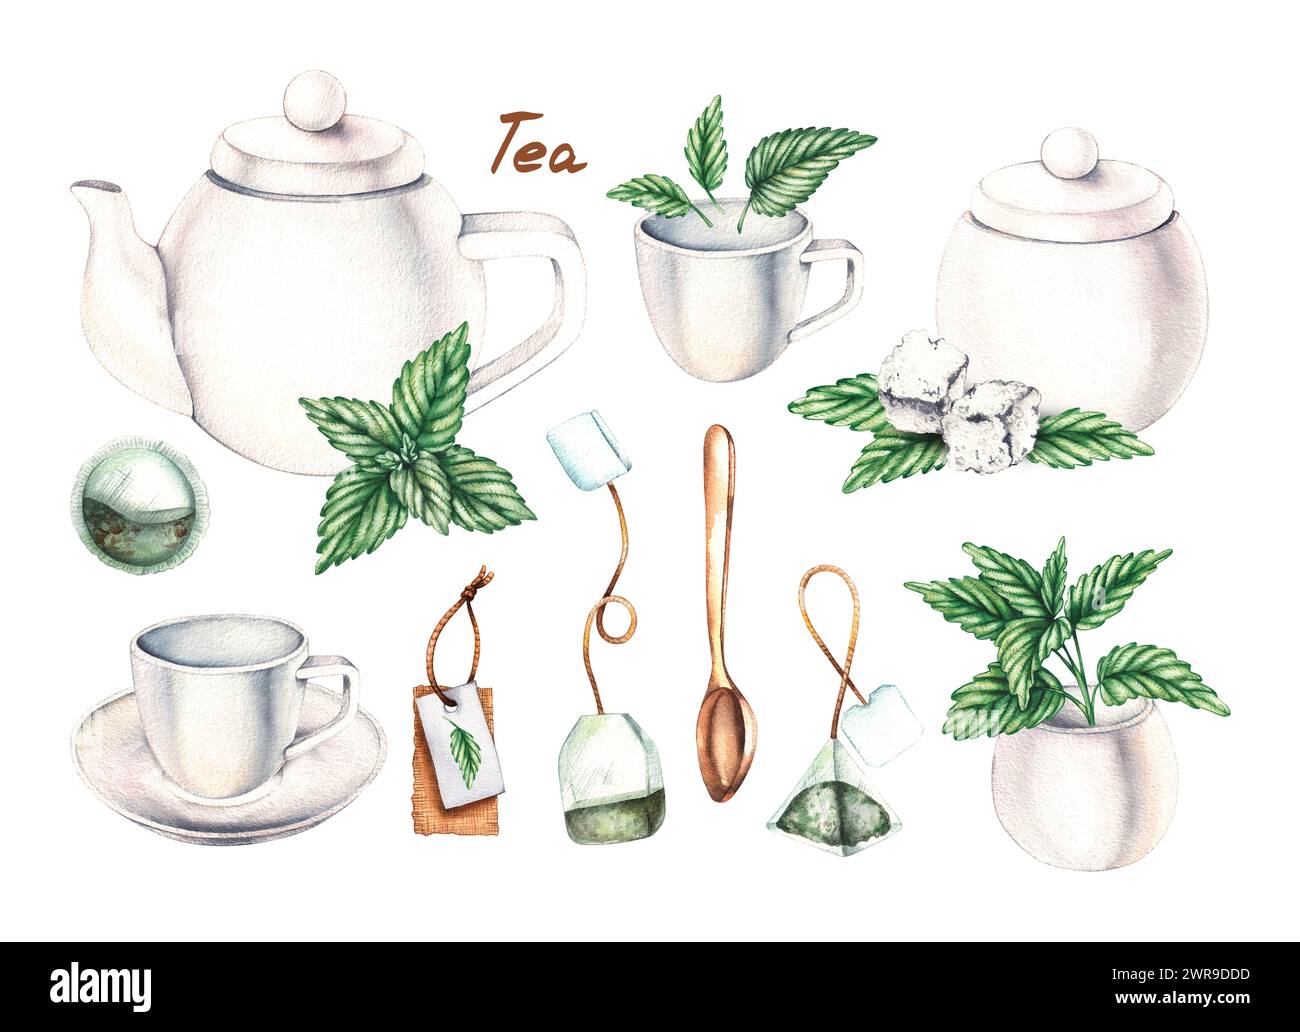 Service à thé blanc aquarelle, sachets de thé, sucre et menthe isolés sur blanc. Set de thé pour la conception d'emballages, étiquettes, produits alimentaires, etc Banque D'Images